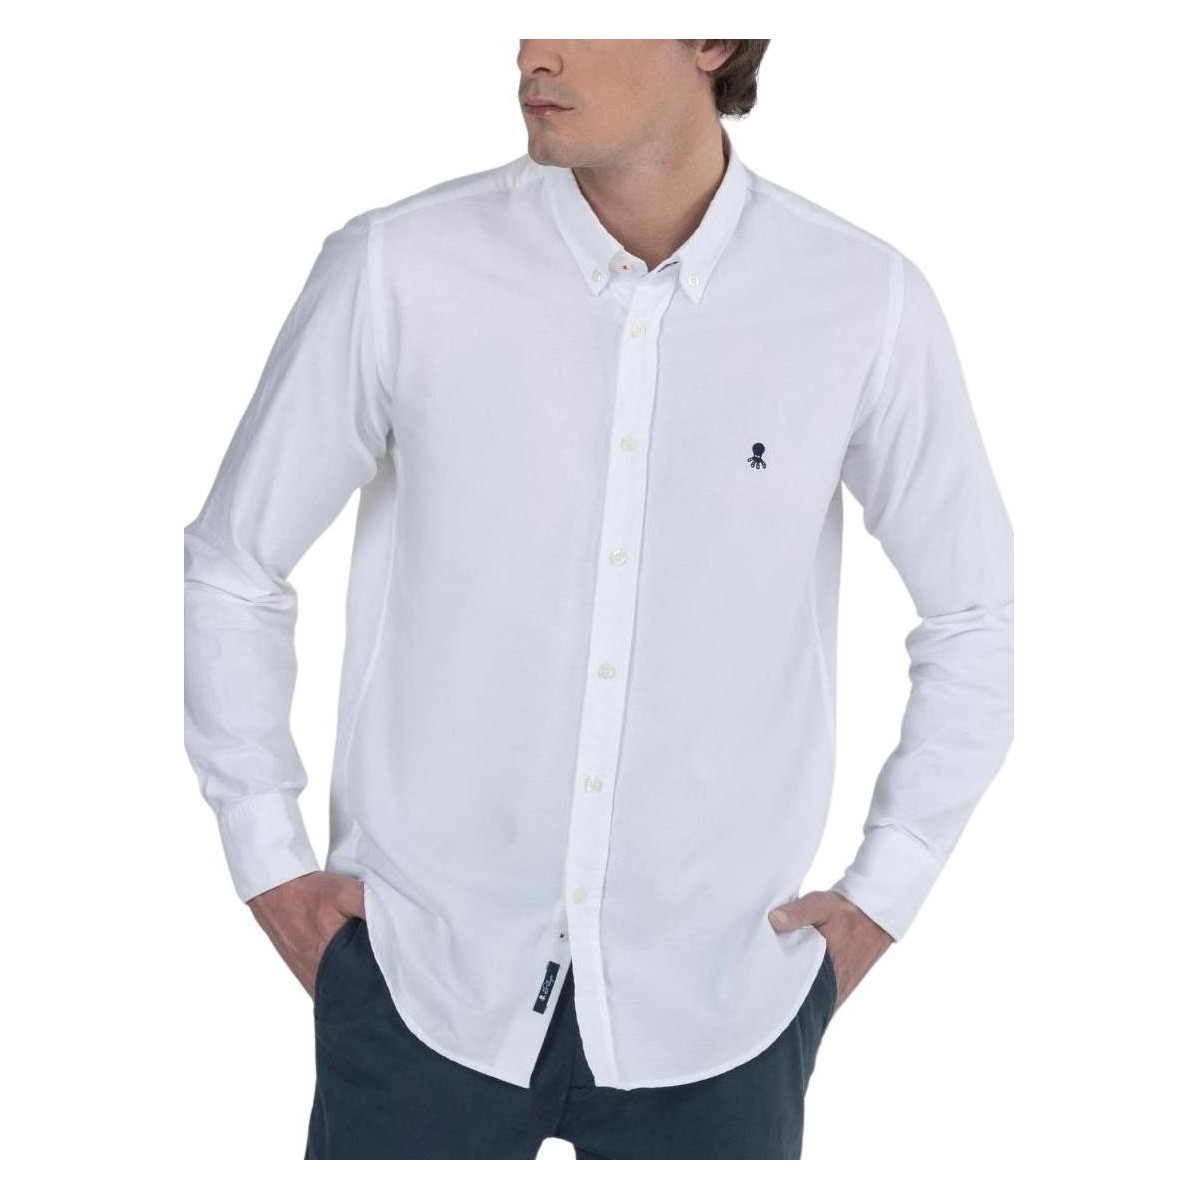 Vêtements Homme Chemises manches longues Elpulpo  Blanc